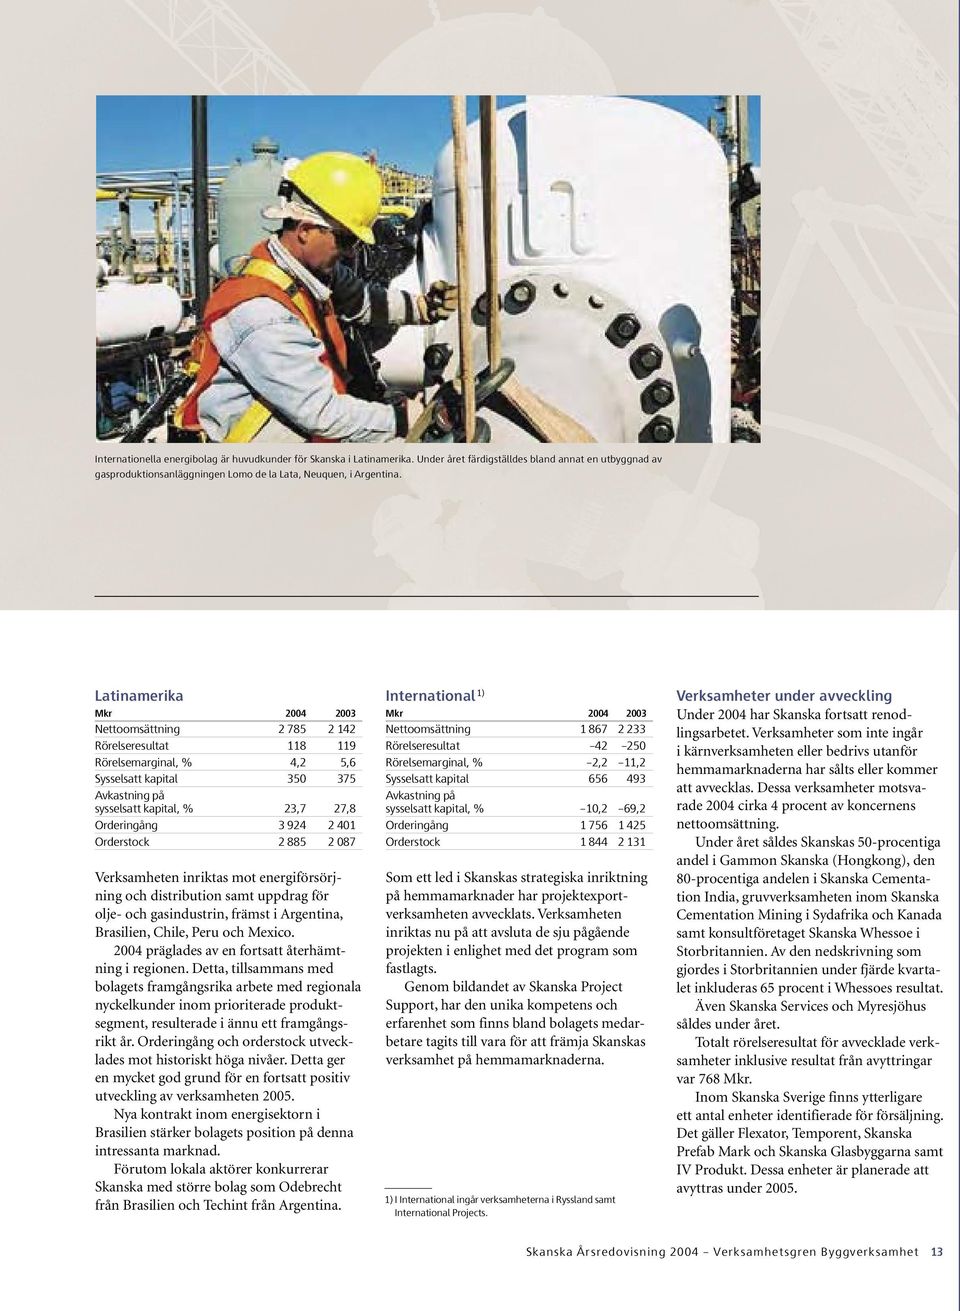 401 Orderstock 2 885 2 087 Verksamheten inriktas mot energiförsörjning och distribution samt uppdrag för olje- och gasindustrin, främst i Argentina, Brasilien, Chile, Peru och Mexico.